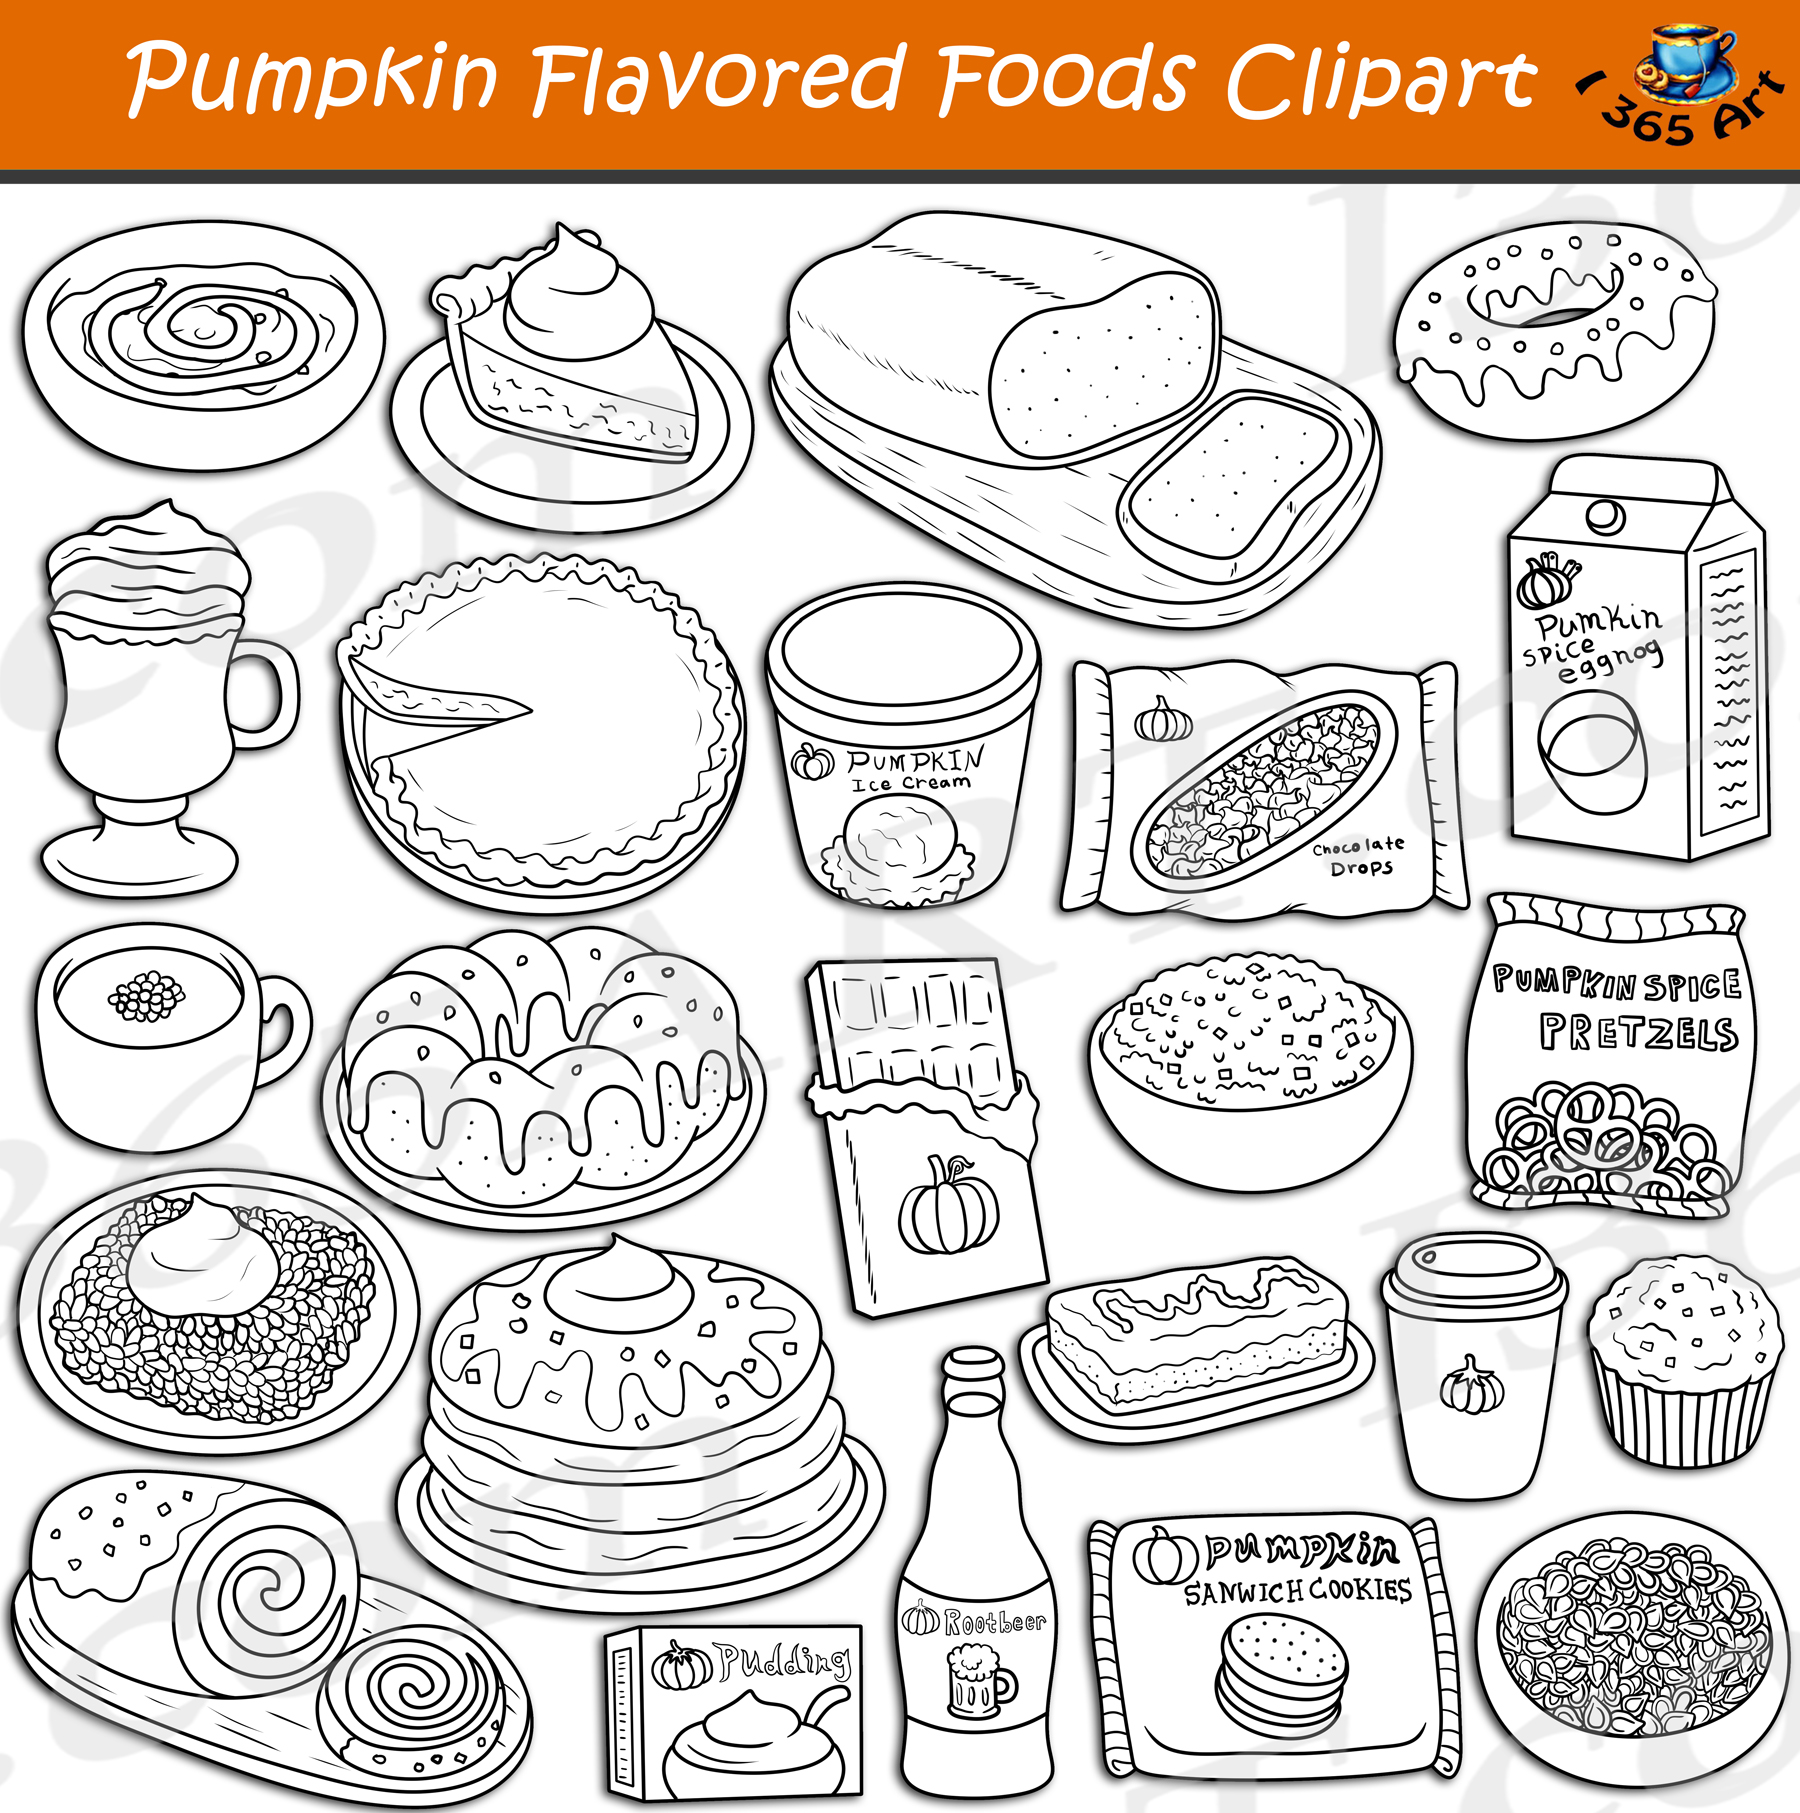 Pumpkin flavor foods clipart set download